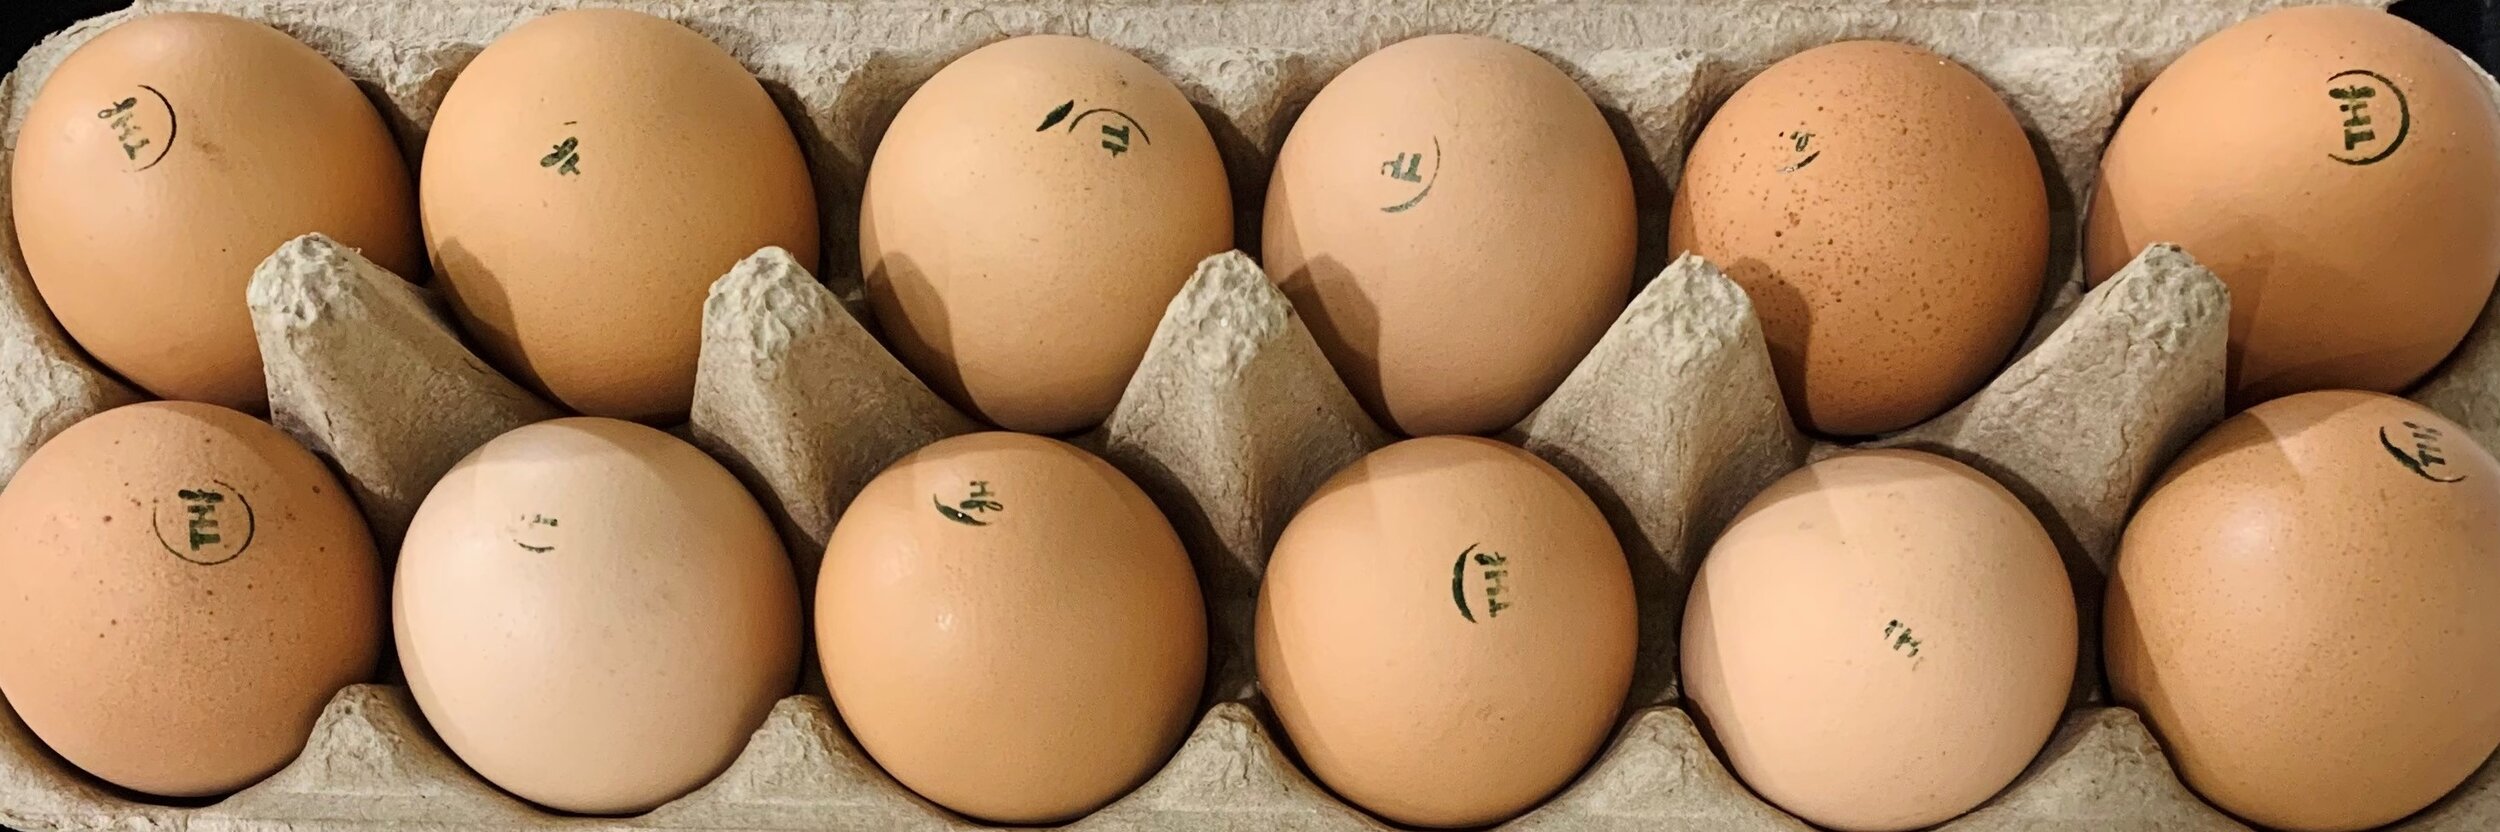 Treeton Eggs.jpg